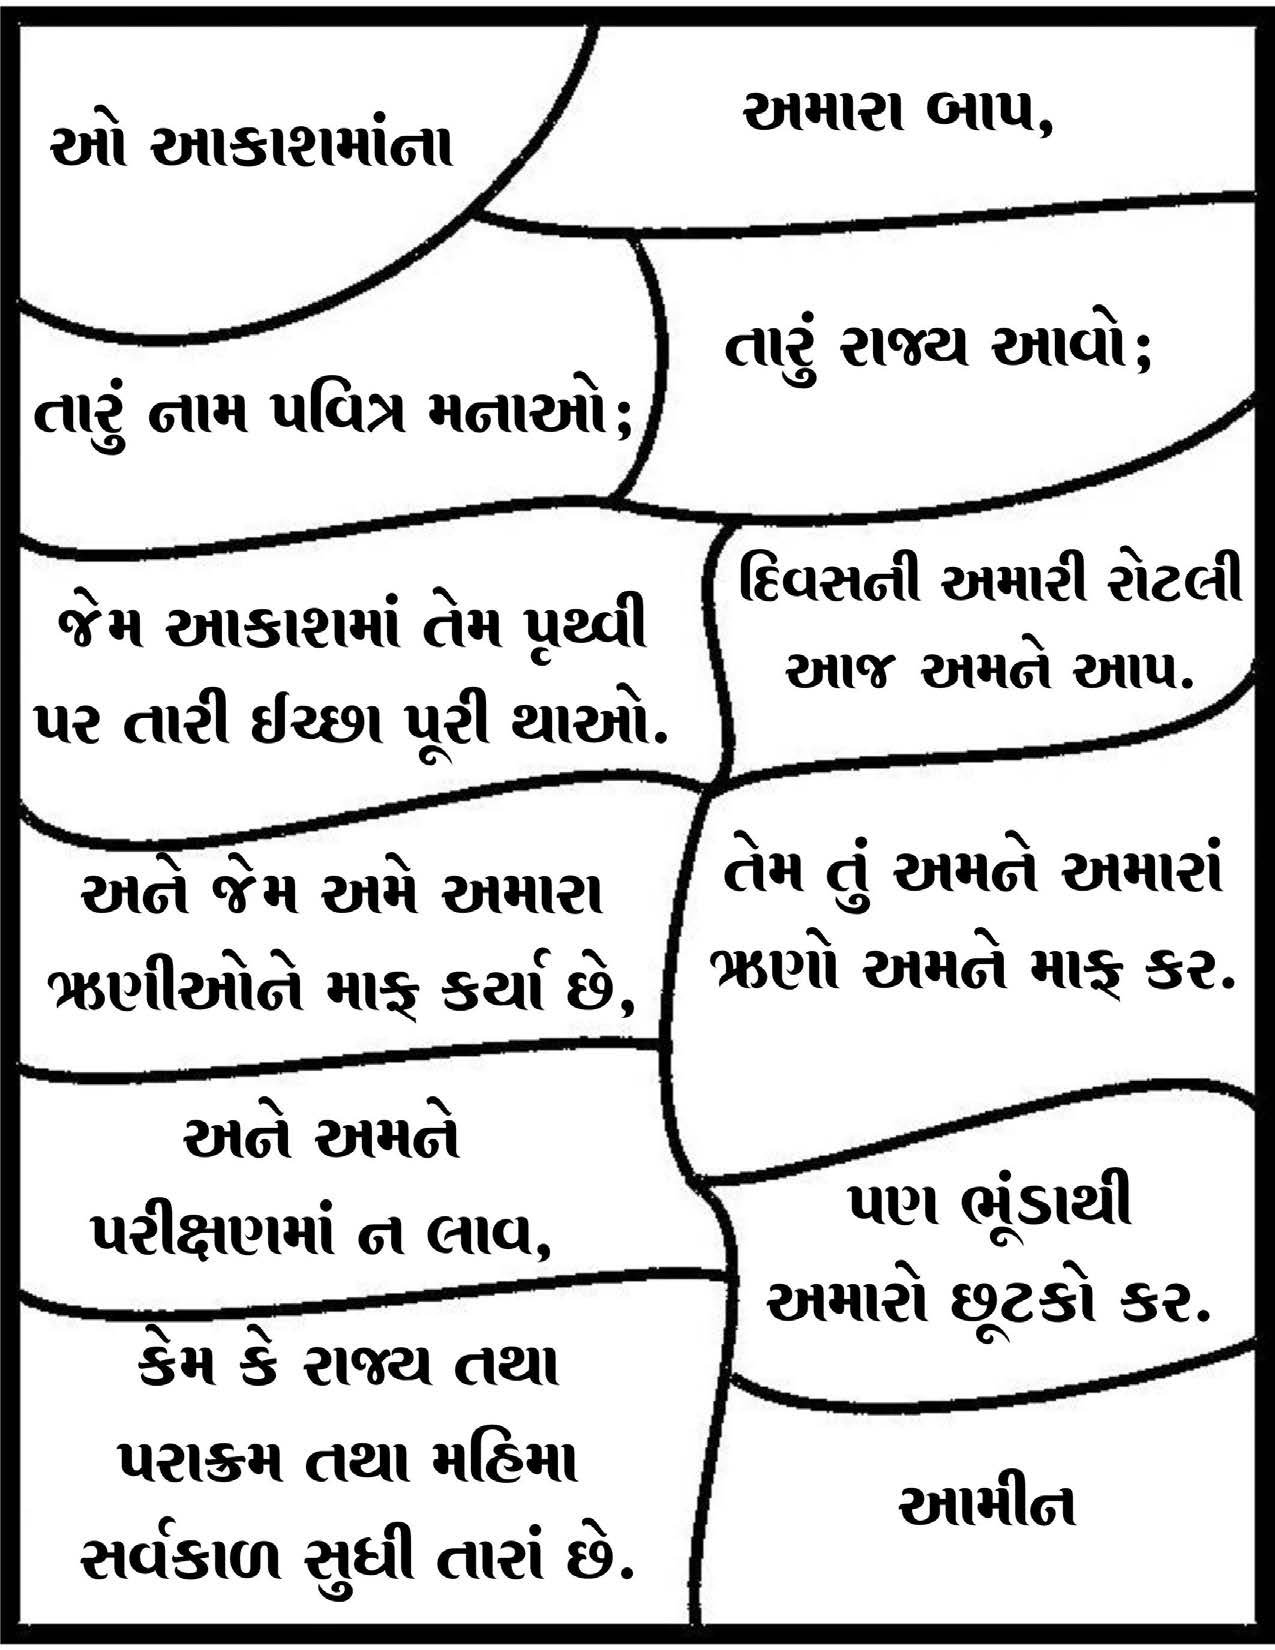 The Lord's prayer Gujarati